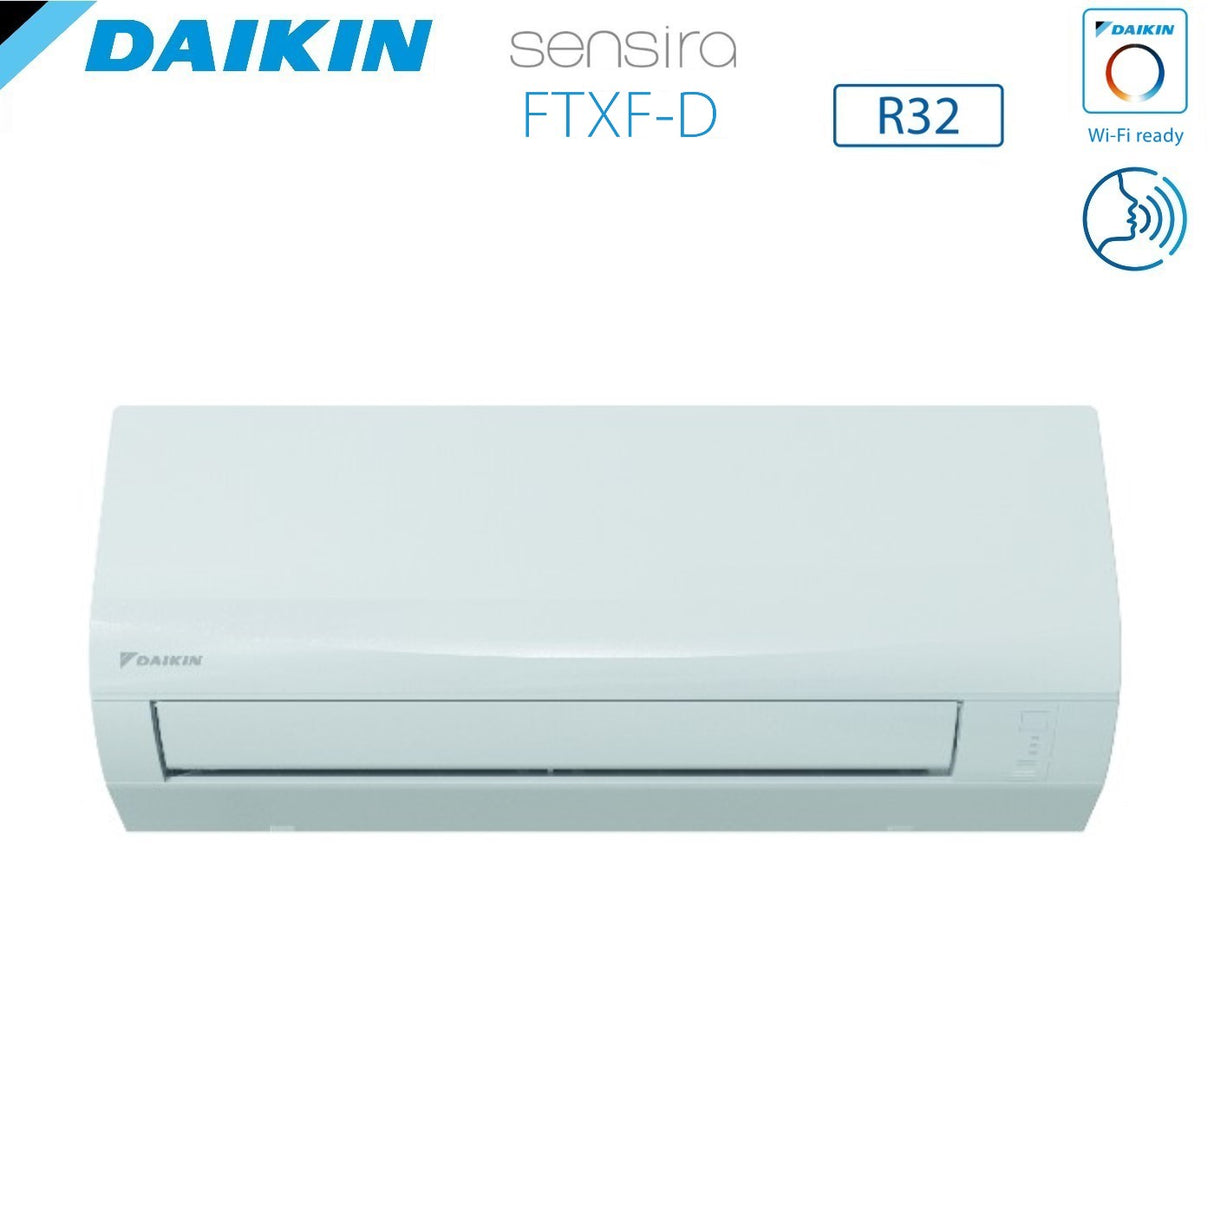 immagine-3-daikin-climatizzatore-condizionatore-daikin-inverter-serie-ecoplus-sensira-7000-btu-ftxf20d-r-32-wi-fi-optional-classe-a-ean-8059657000774